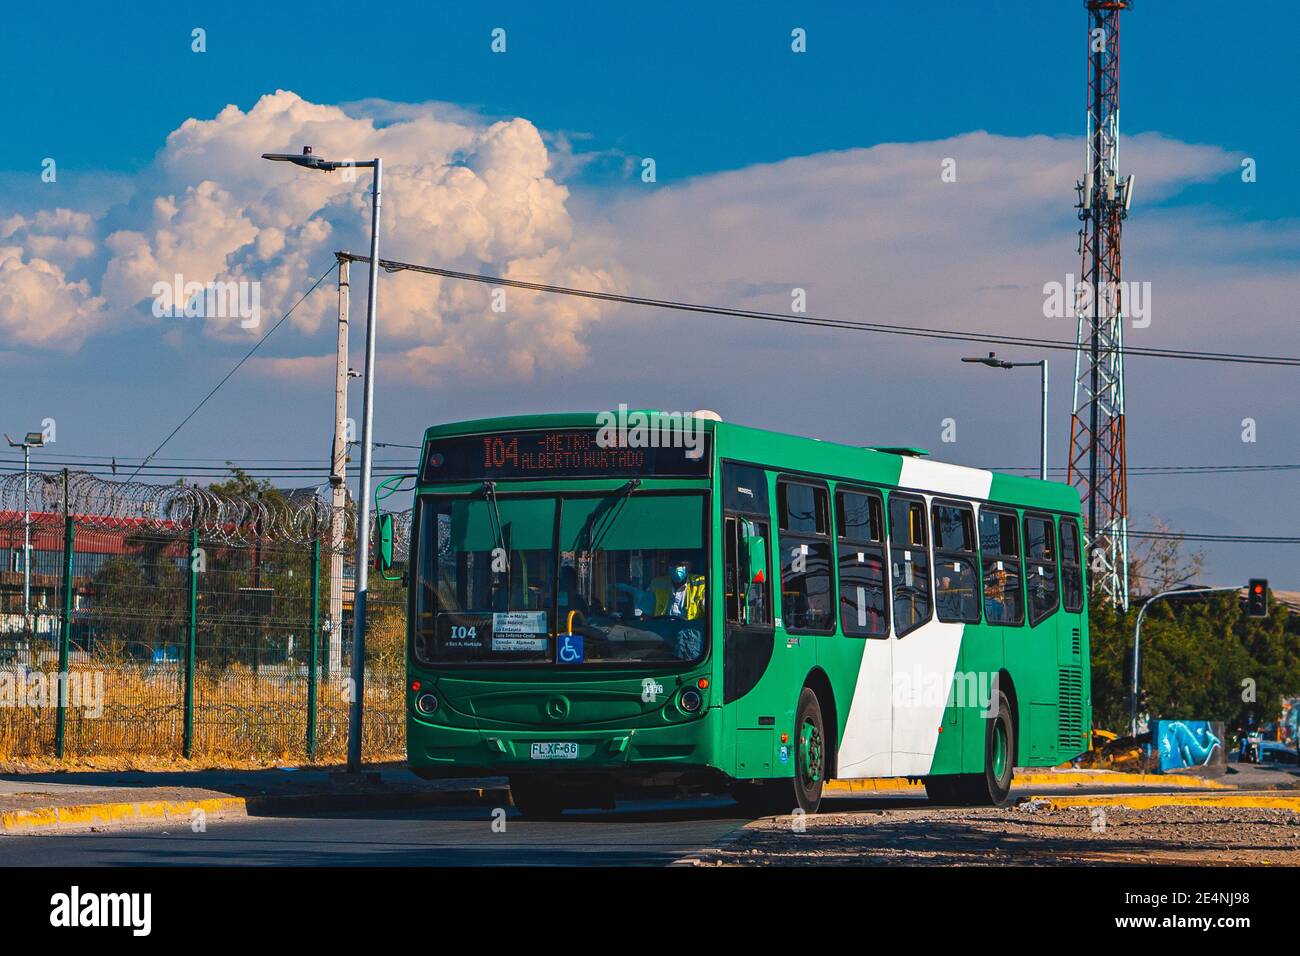 Santiago, Cile - Gennaio 2021: Un autobus Transantiago a Cerrillos Foto Stock